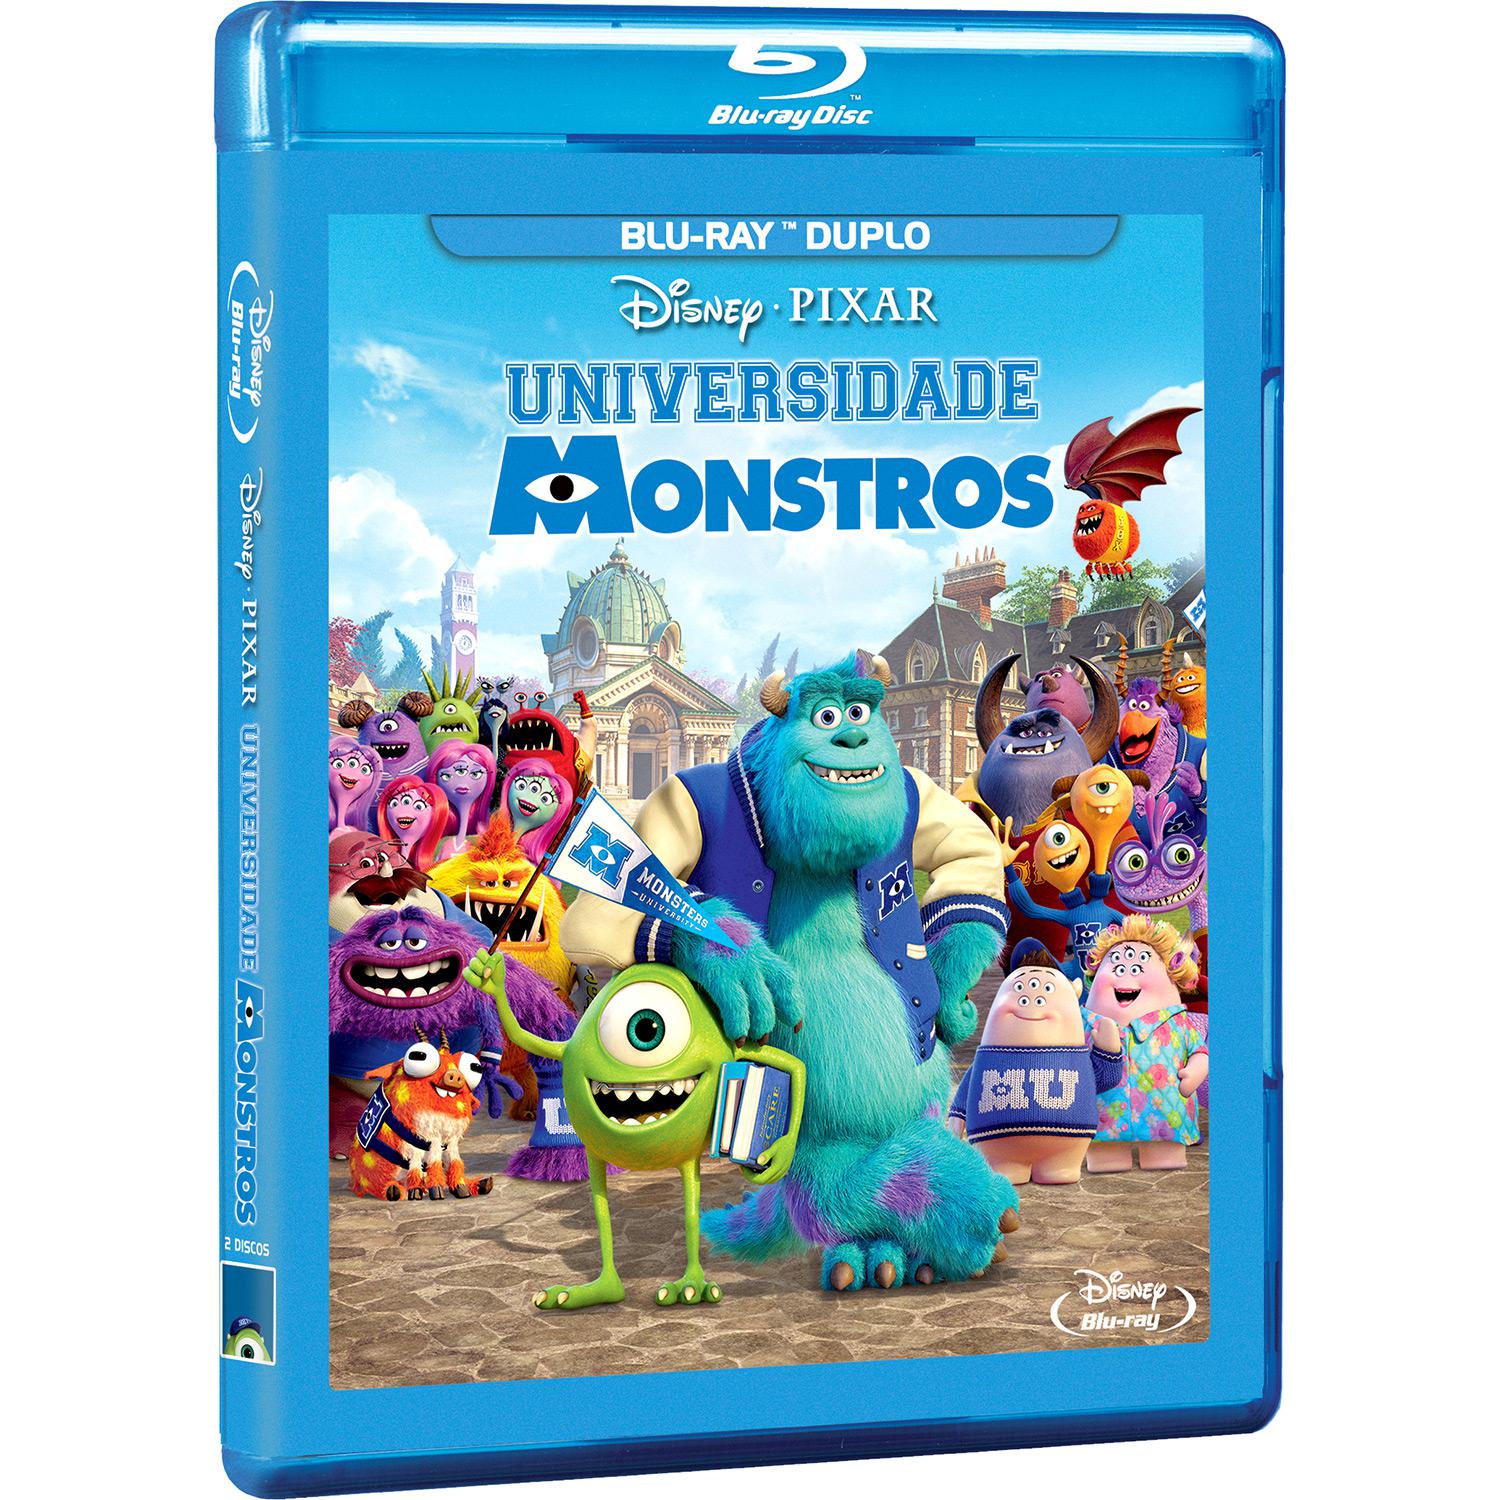 Blu-ray Universidade Monstros (2 discos) é bom? Vale a pena?